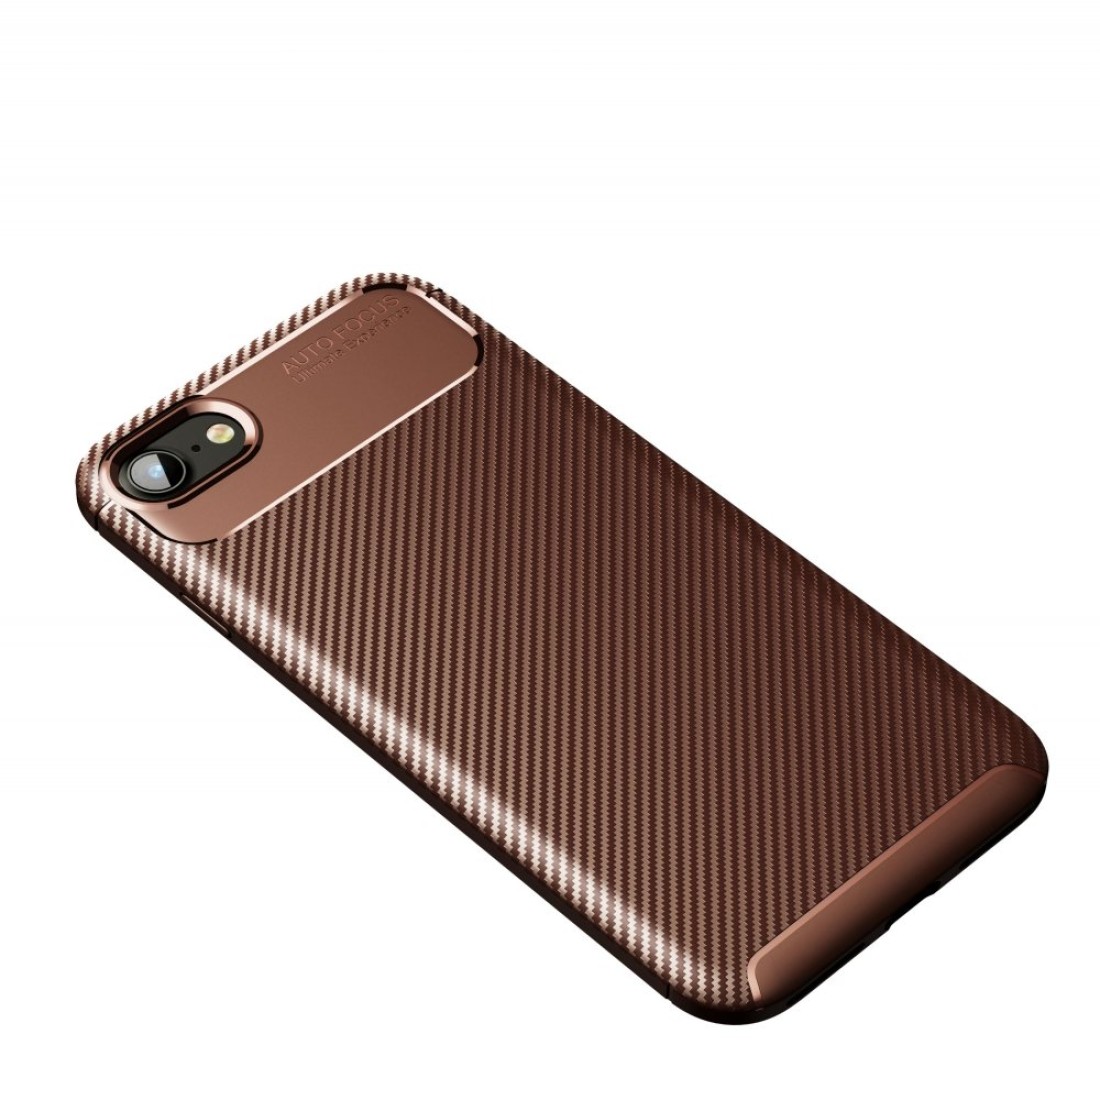 Apple iPhone SE 2020 Kılıf Focus Karbon Silikon - Kahverengi